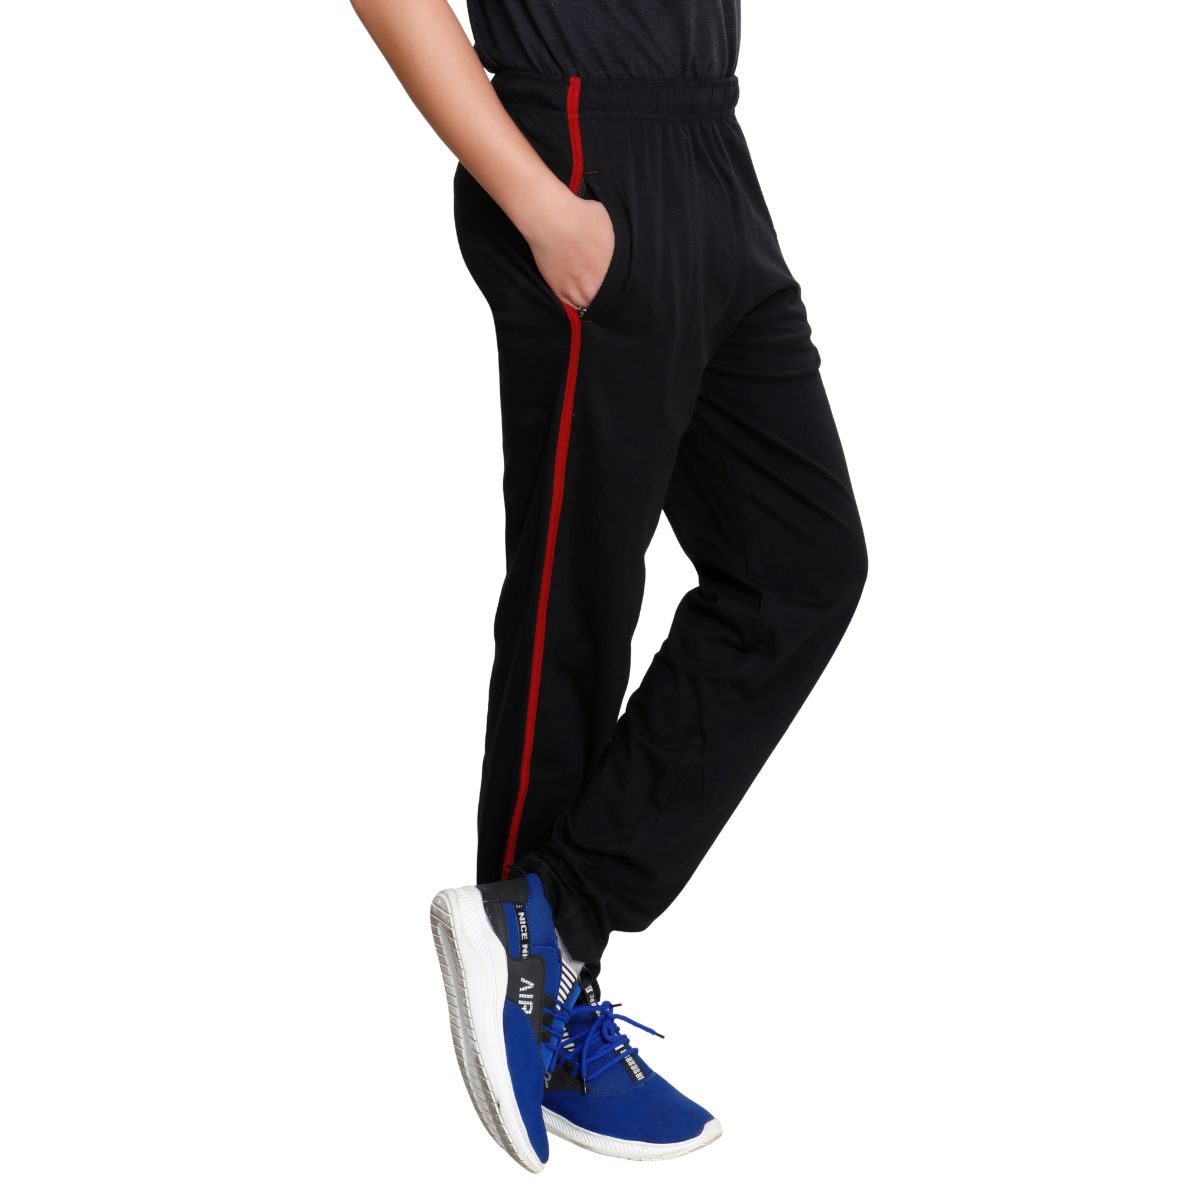 Buy Black Cotton Track Pants For Men Online: TT Bazaar